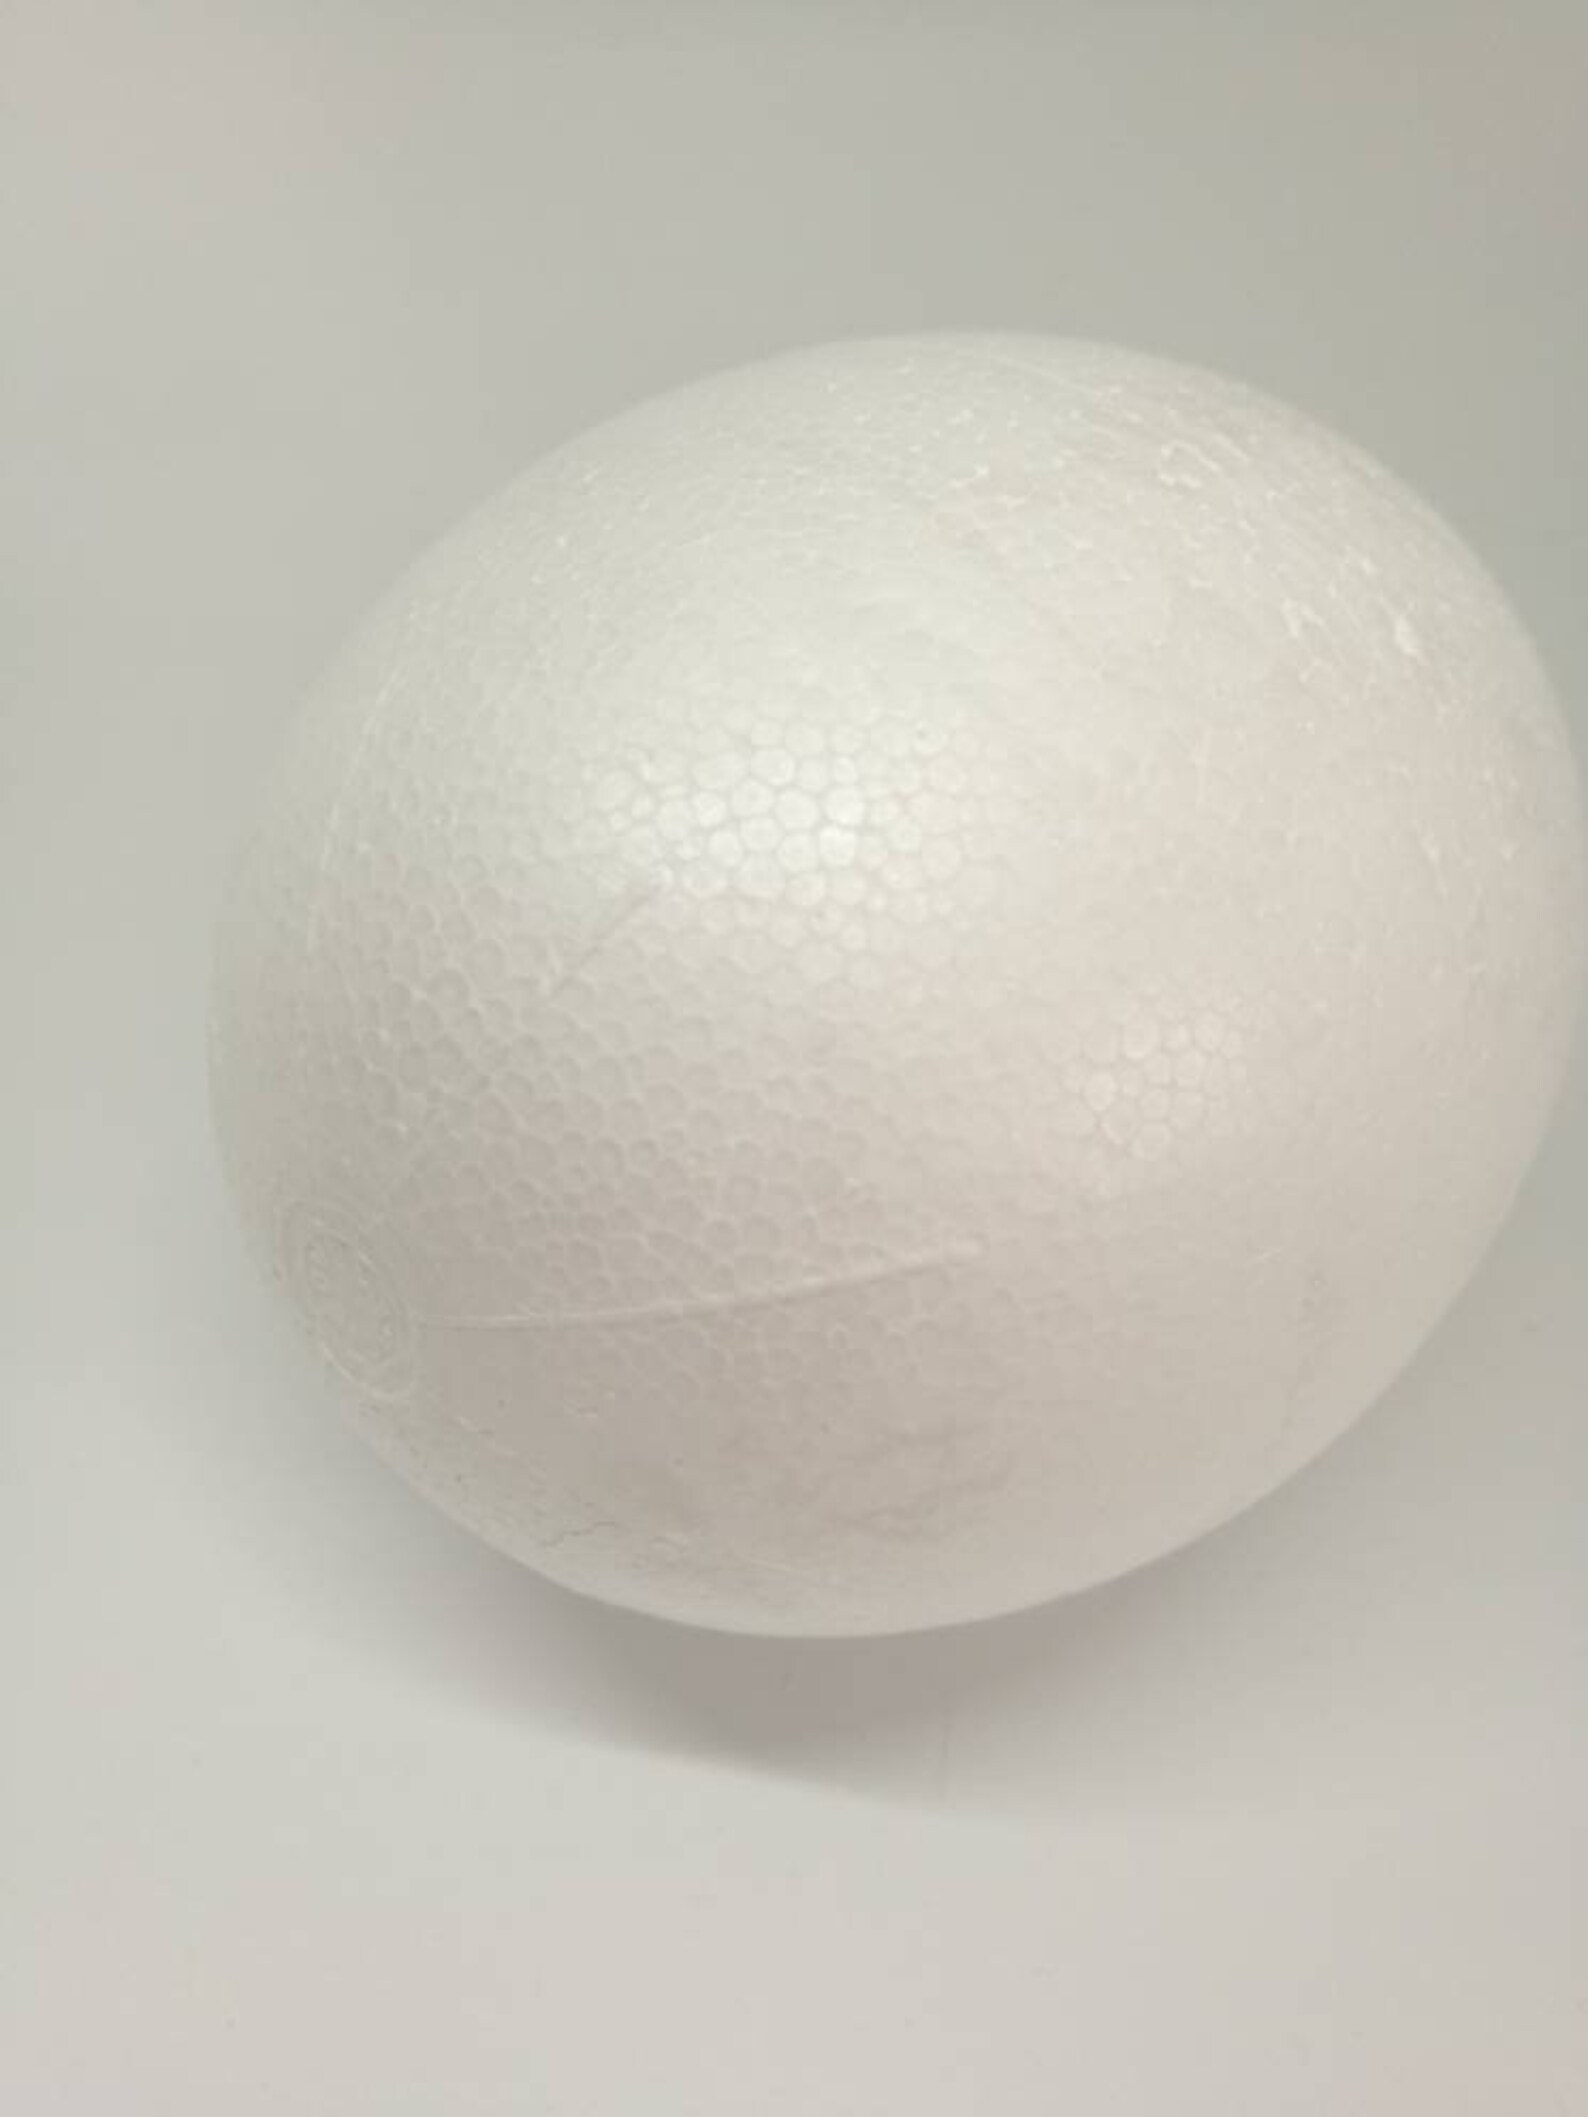 Extra Large Polystyrene Eggs 4.7 Set of 6 Marked | Etsy